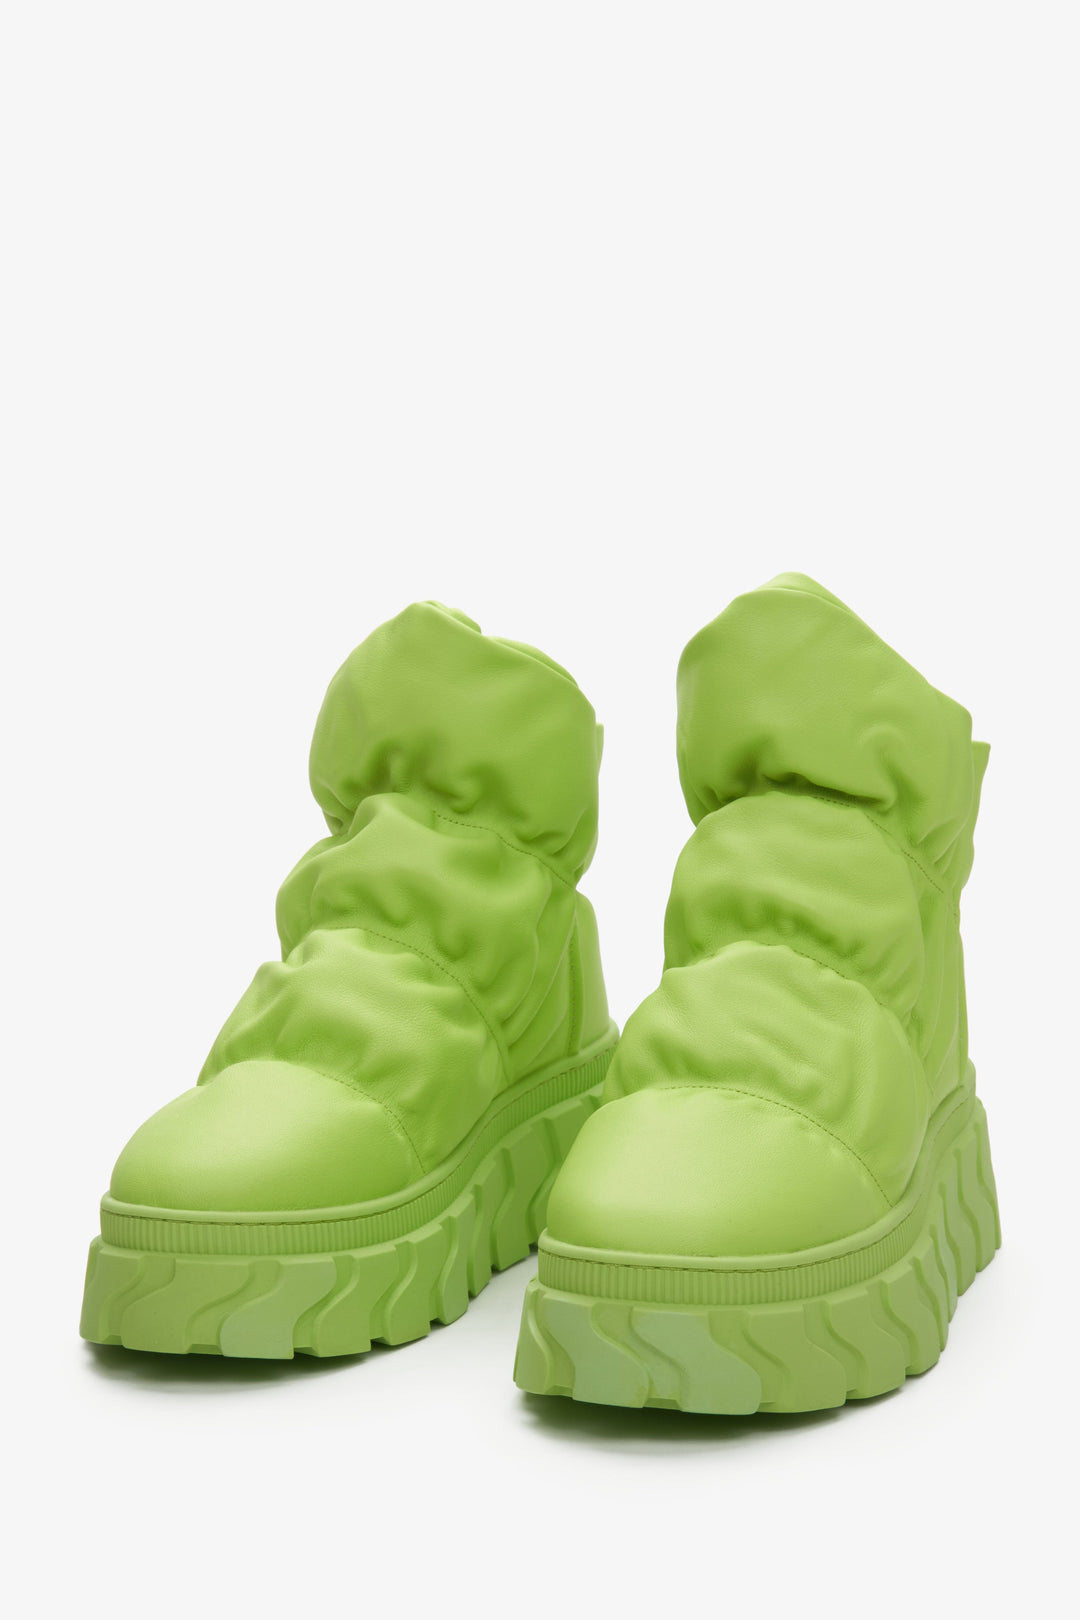 Skórzane śniegowce damskie zielone z puchowym wsadem Estro - zbliżenie na czubek buta.